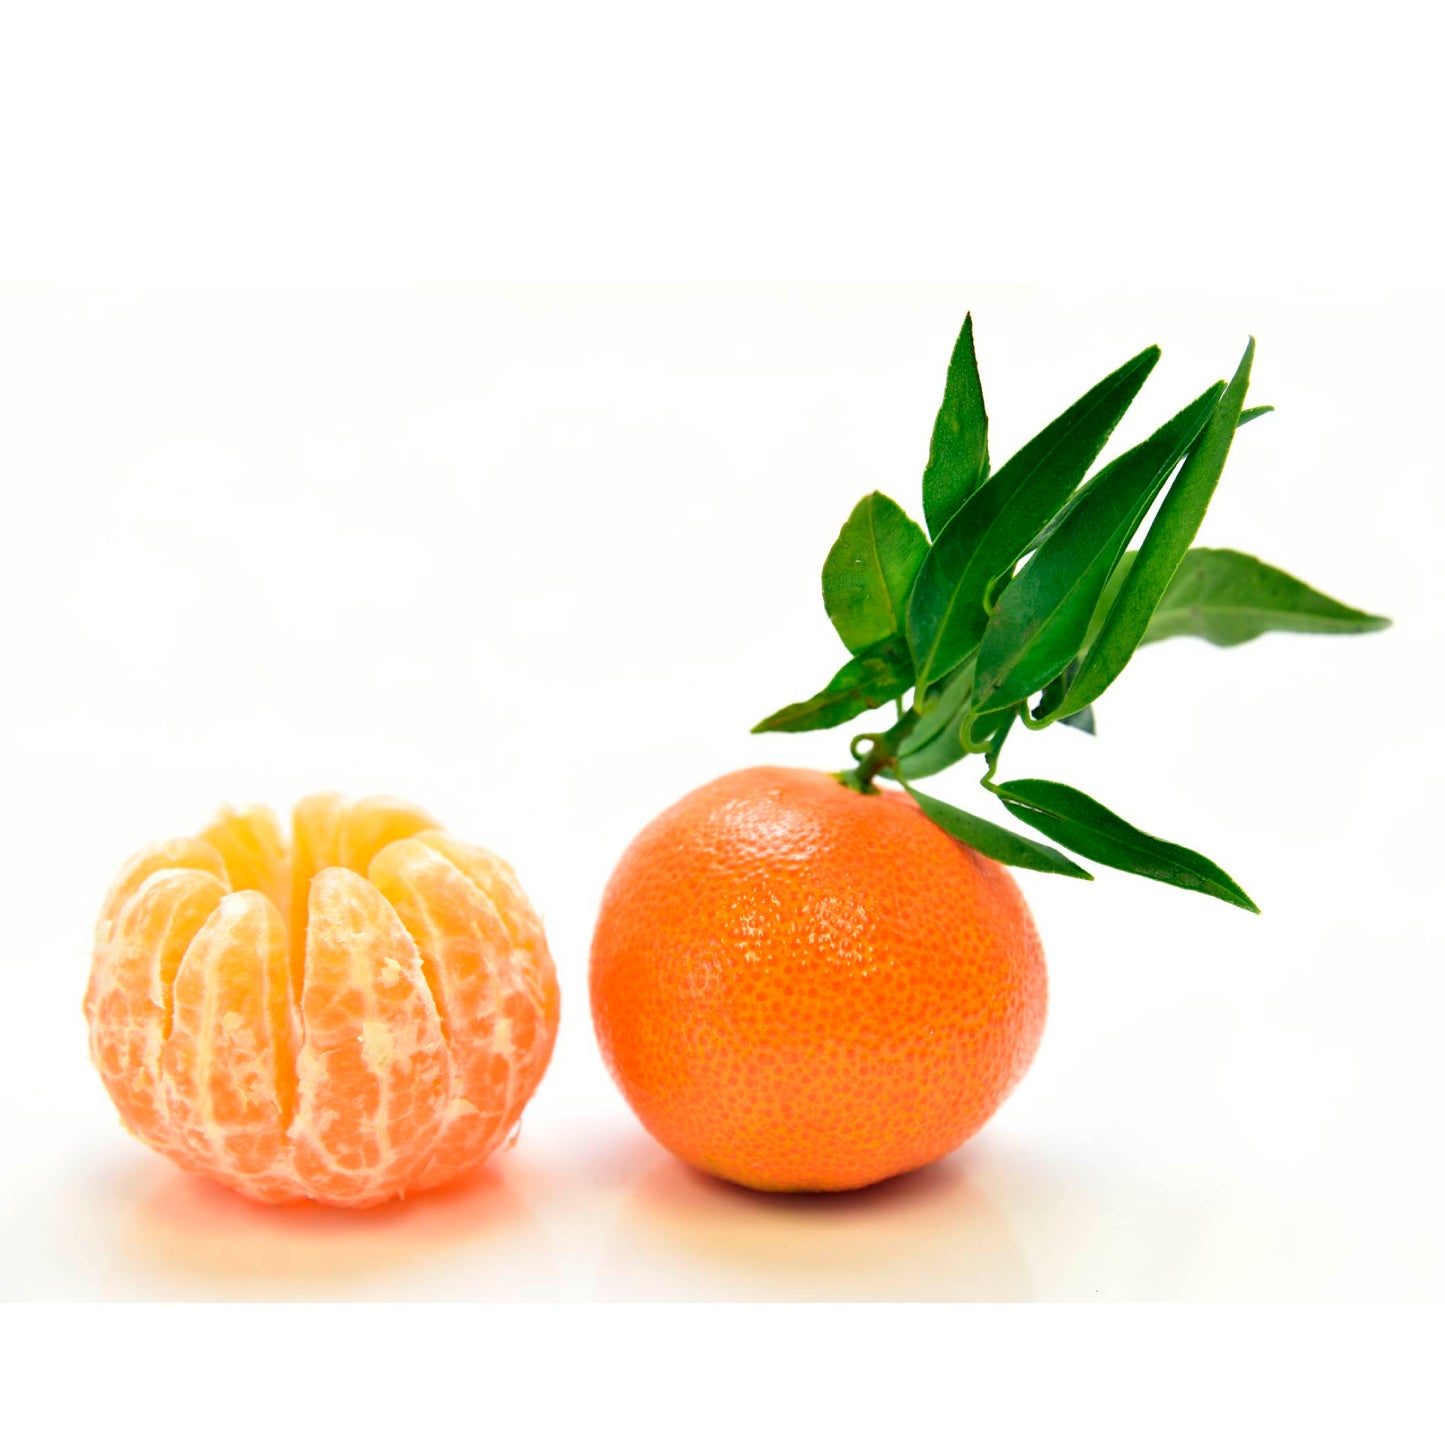 Mandarina libra cosecha orgánica